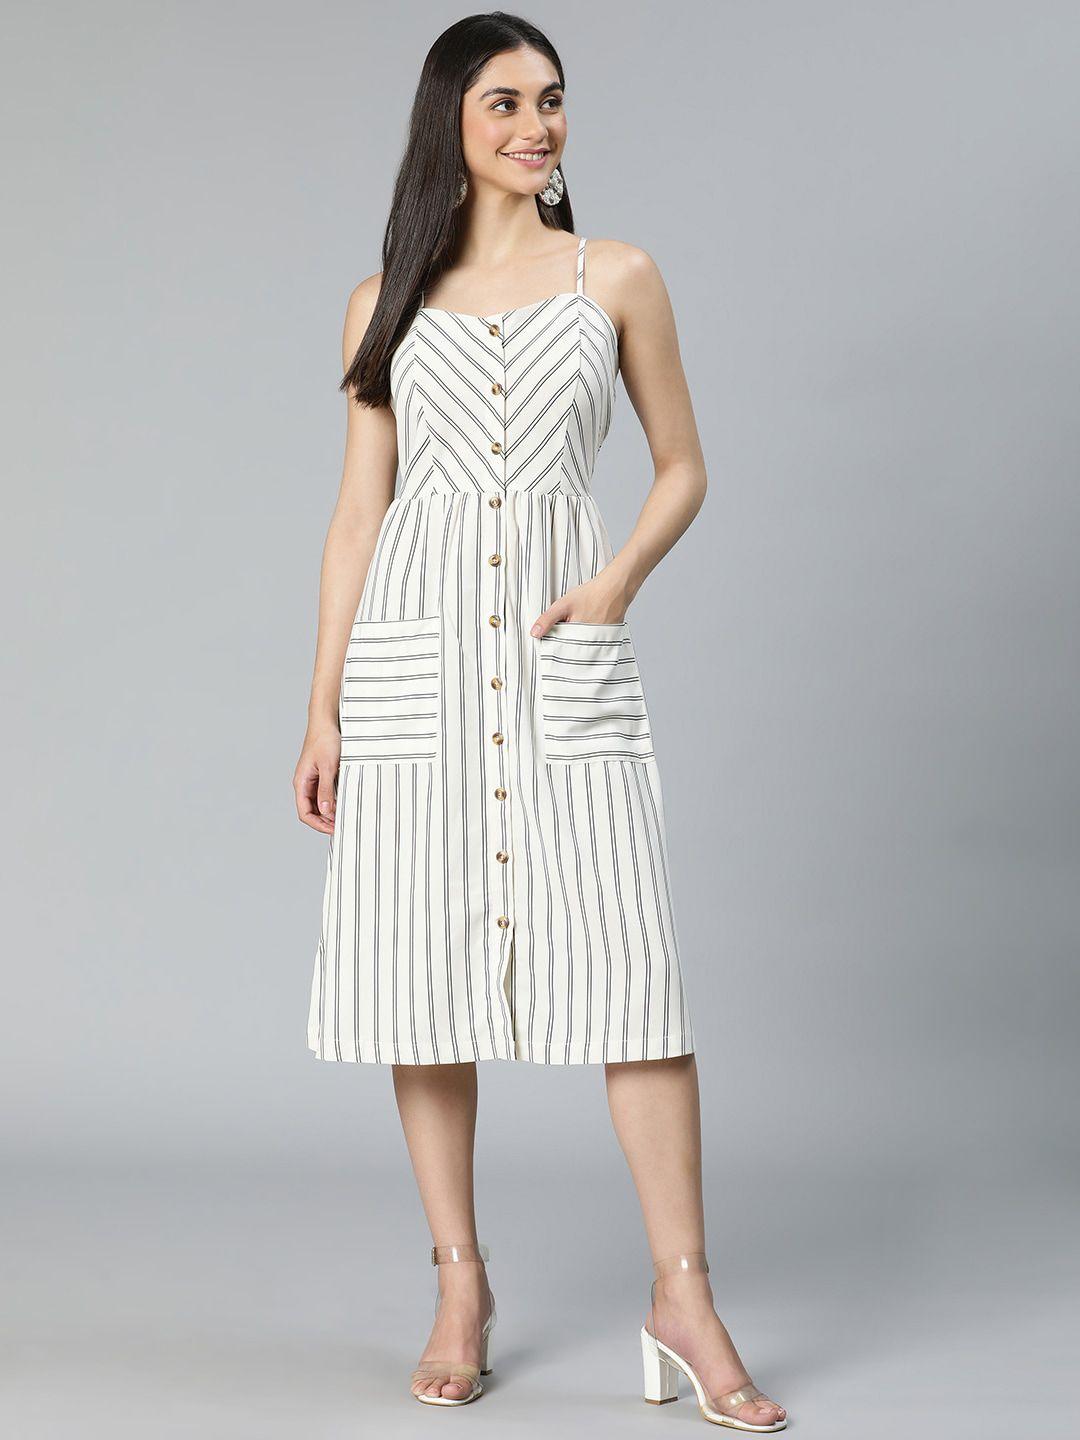 oxolloxo white striped midi dress